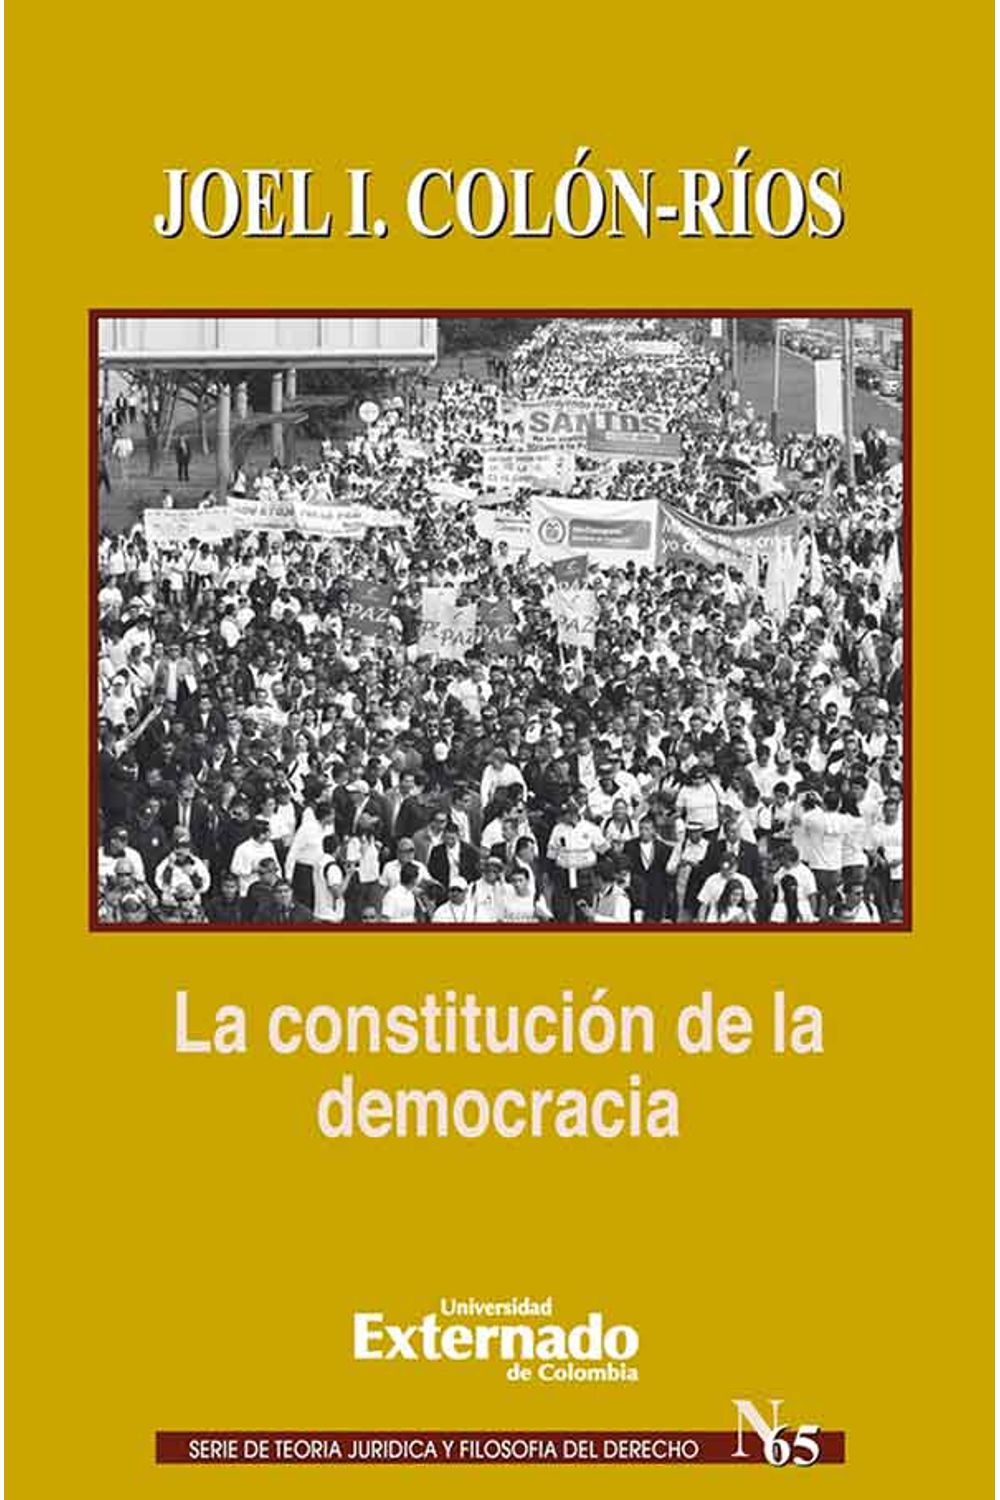 bw-la-constitucioacuten-de-la-democracia-u-externado-de-colombia-9789587720723